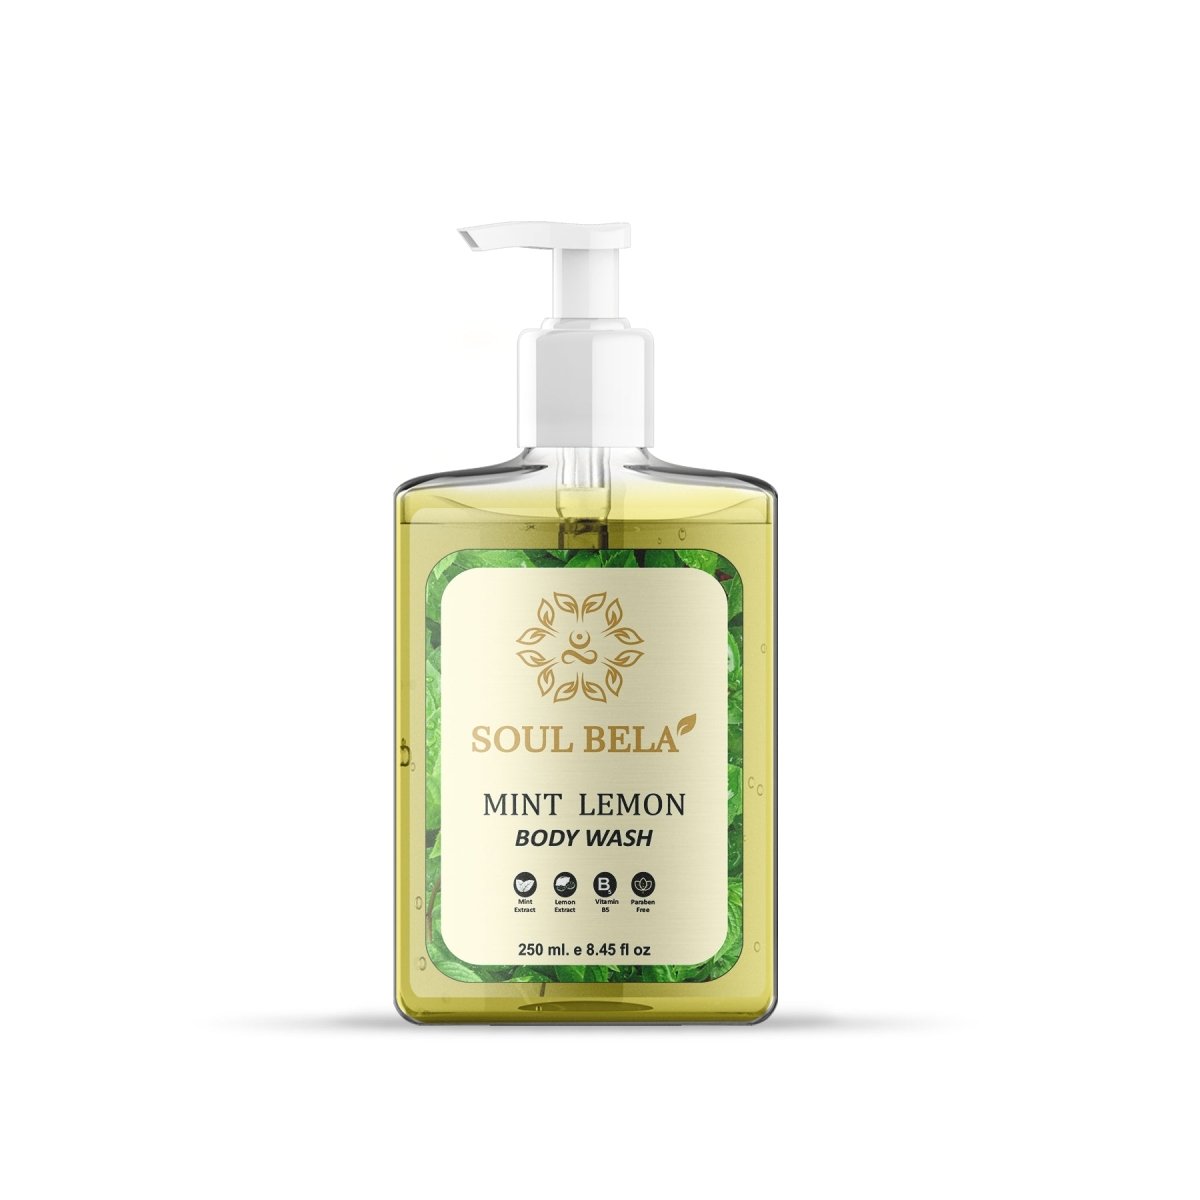 Soul Bela Mint Lemon Body Wash (250ml) - Kreate- Body Wash